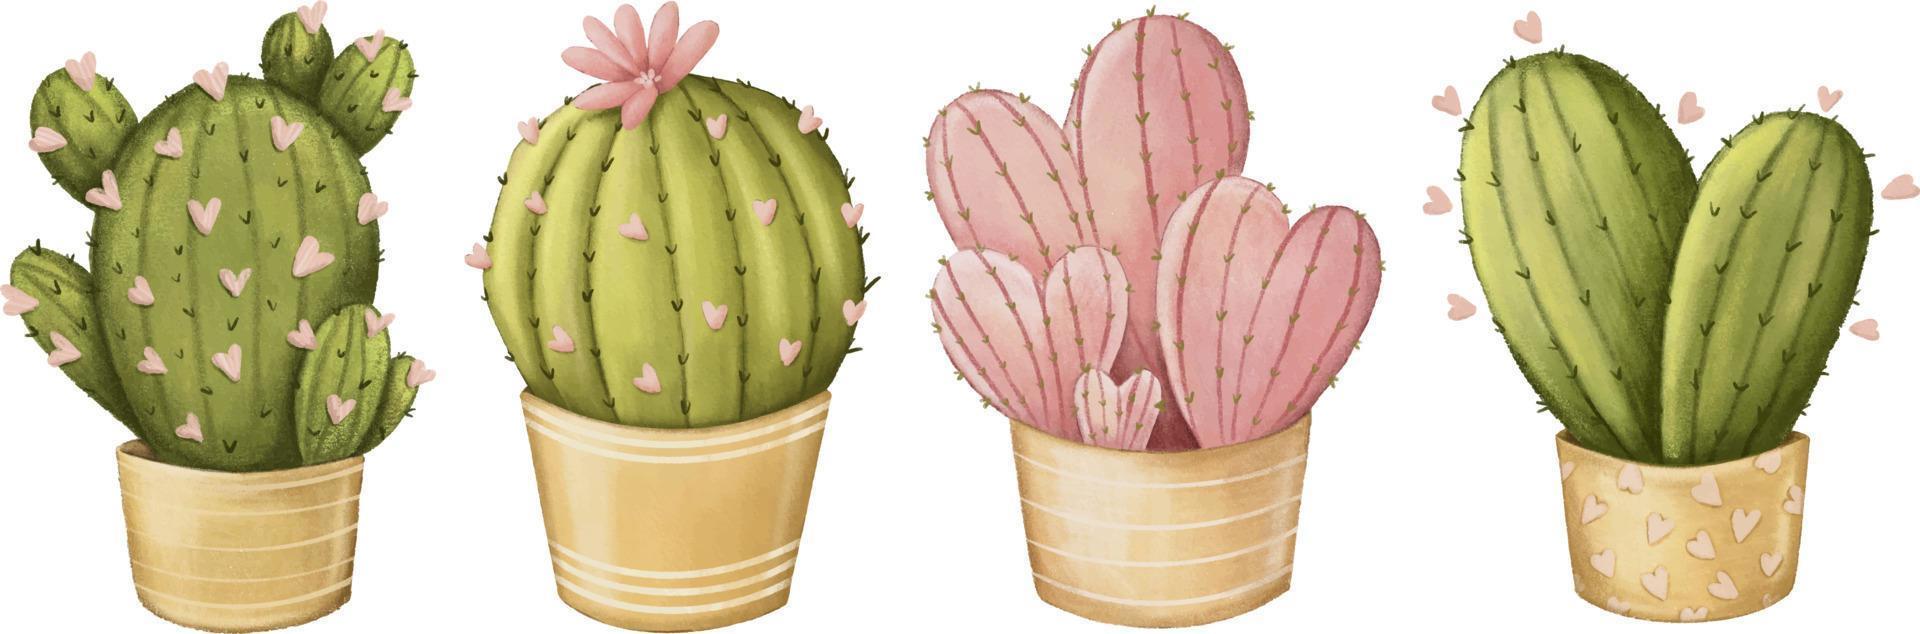 schattige potlood getekende cactus clipart set vector